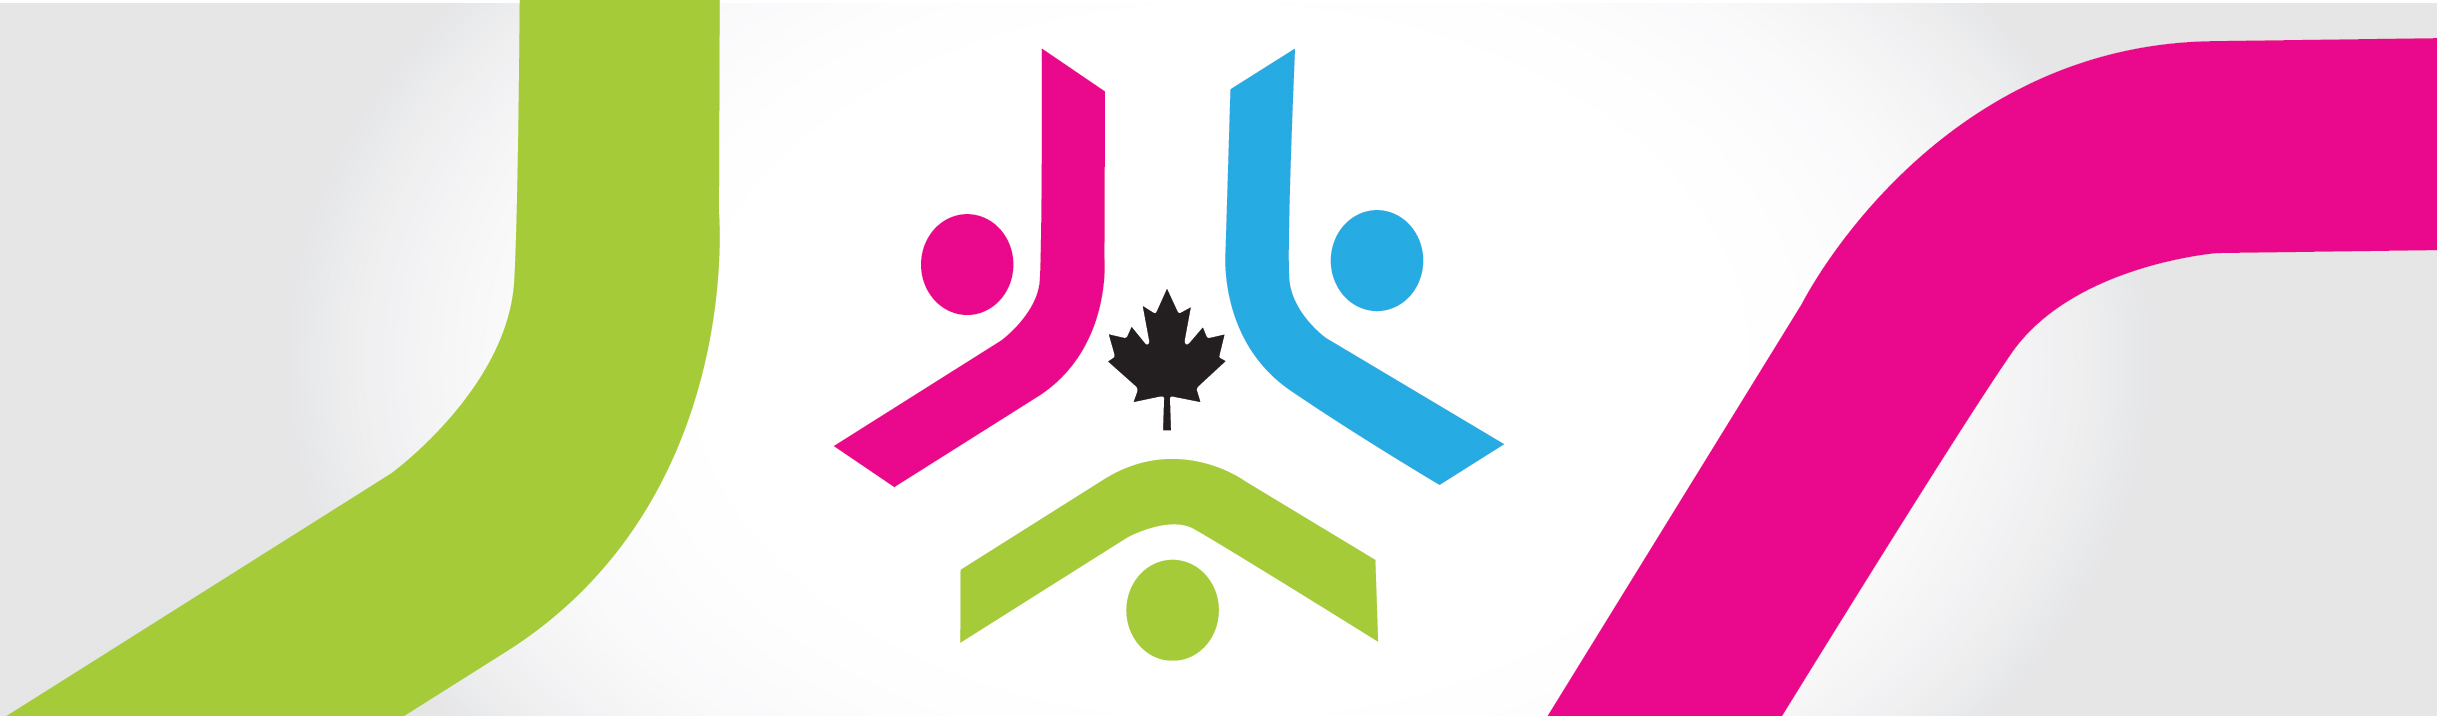 Onglet 3: Accessibilité: Programmes et initiatives du gouvernement du Canada